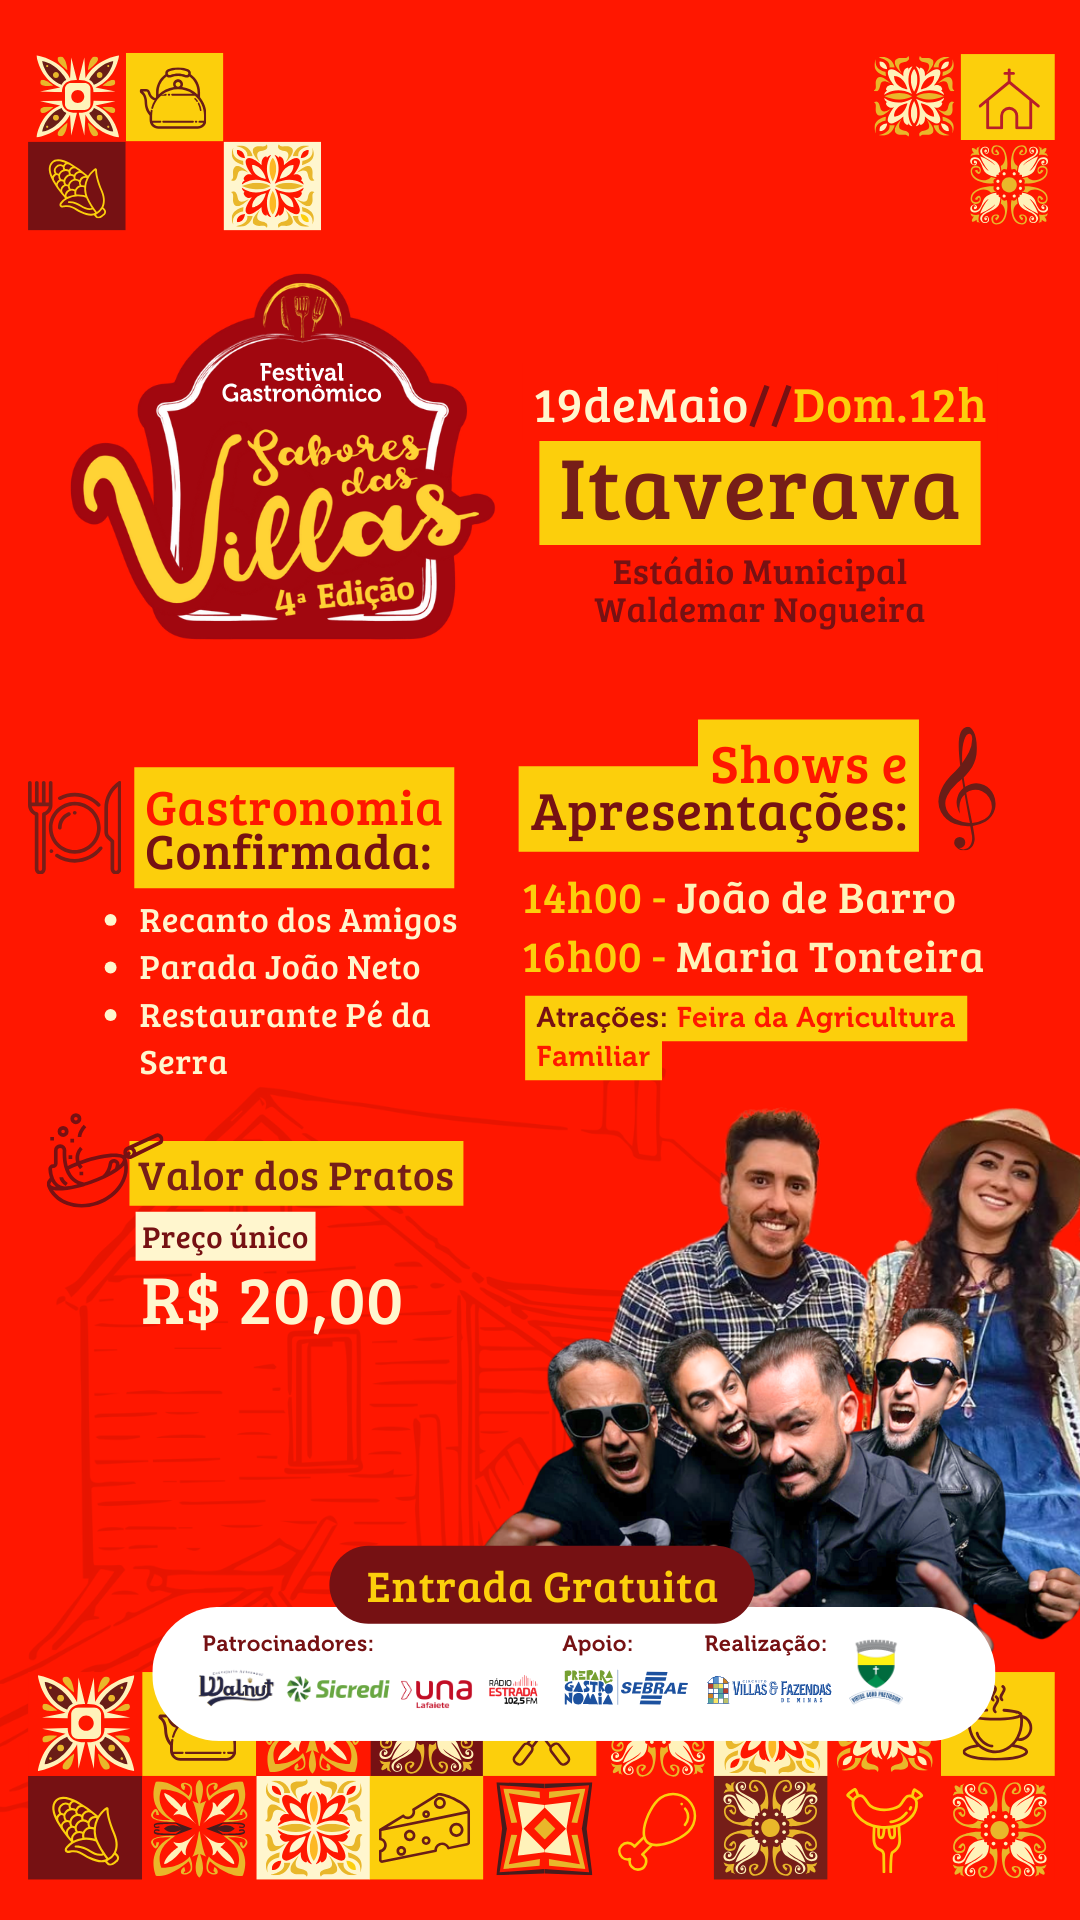 HOJE TEM FESTA: sábado e domingo de mais Festival Gastronômico “Sabores das Villas” em Rio Espera e Itaverava